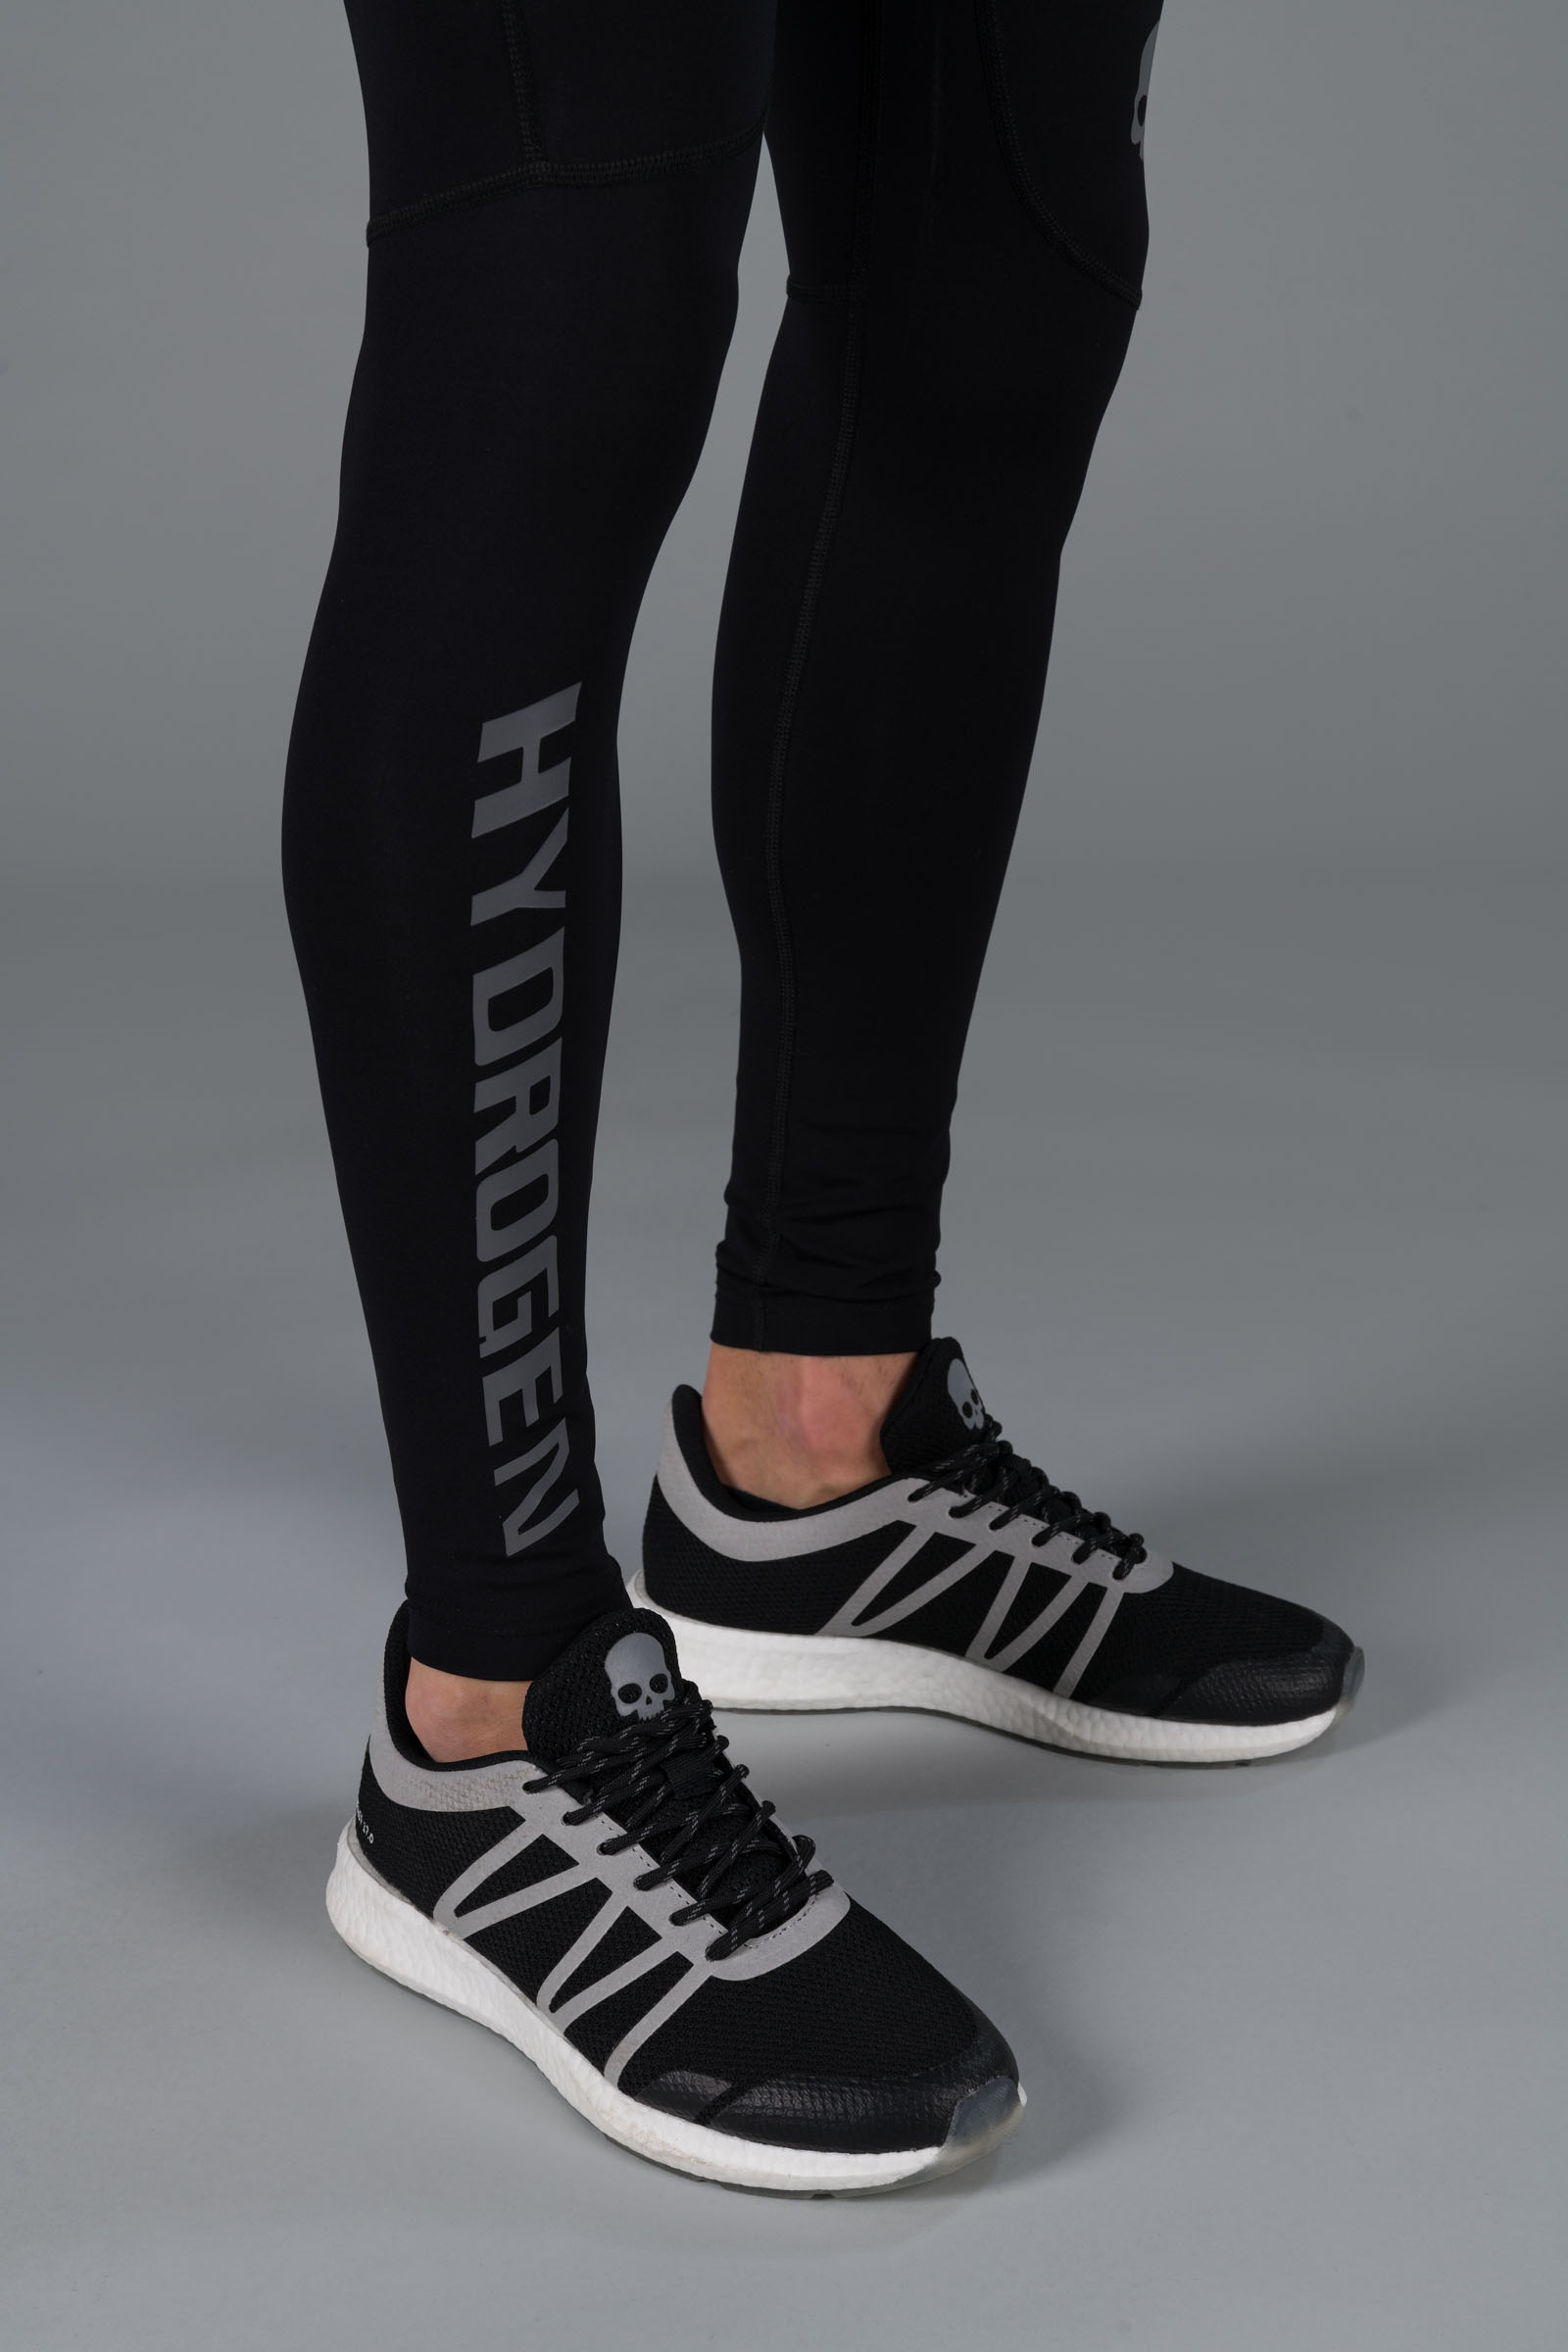 HYDROGEN LEGGINGS - BLACK - Abbigliamento sportivo | Hydrogen